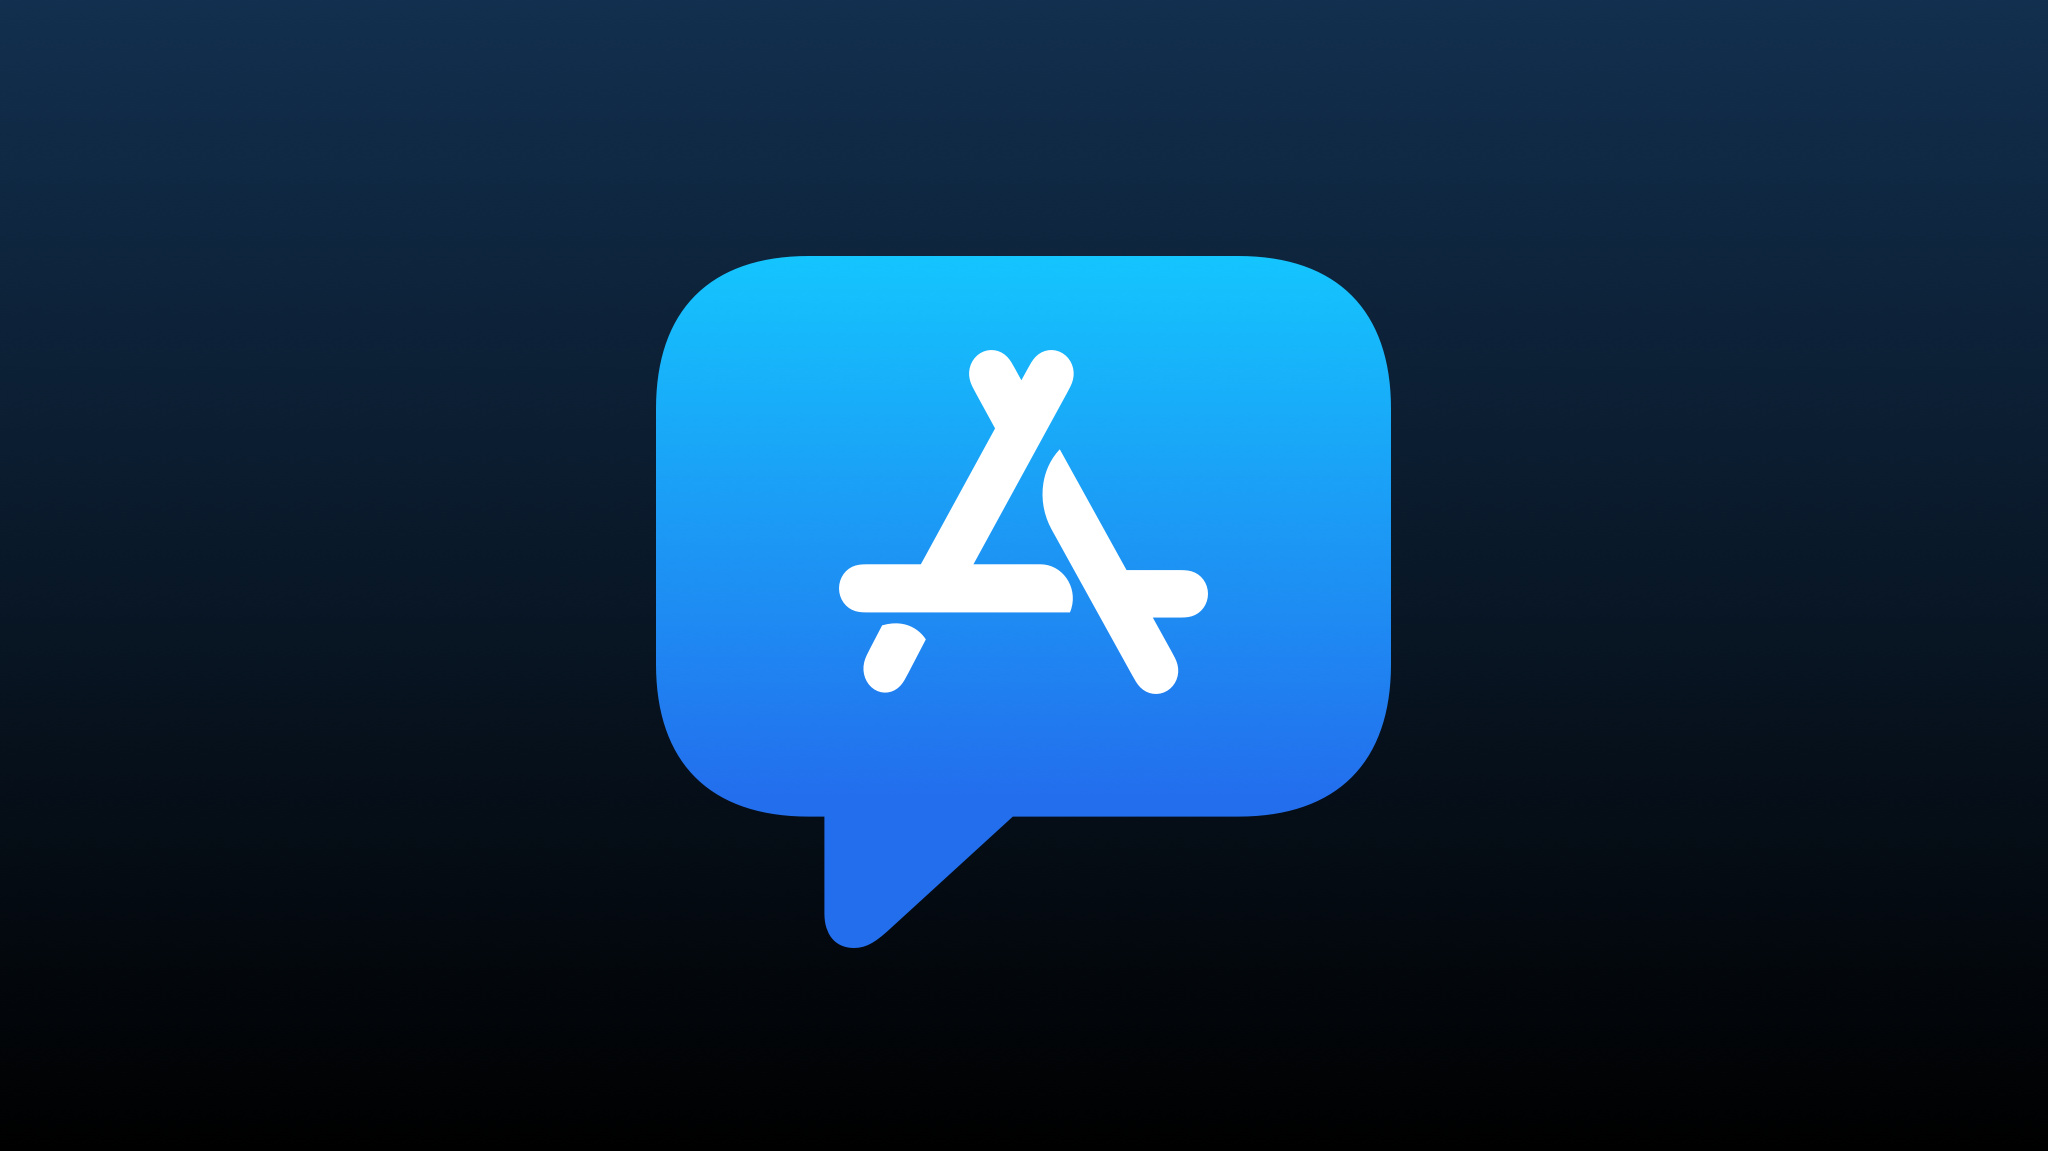 The App Store logo in a speech bubble